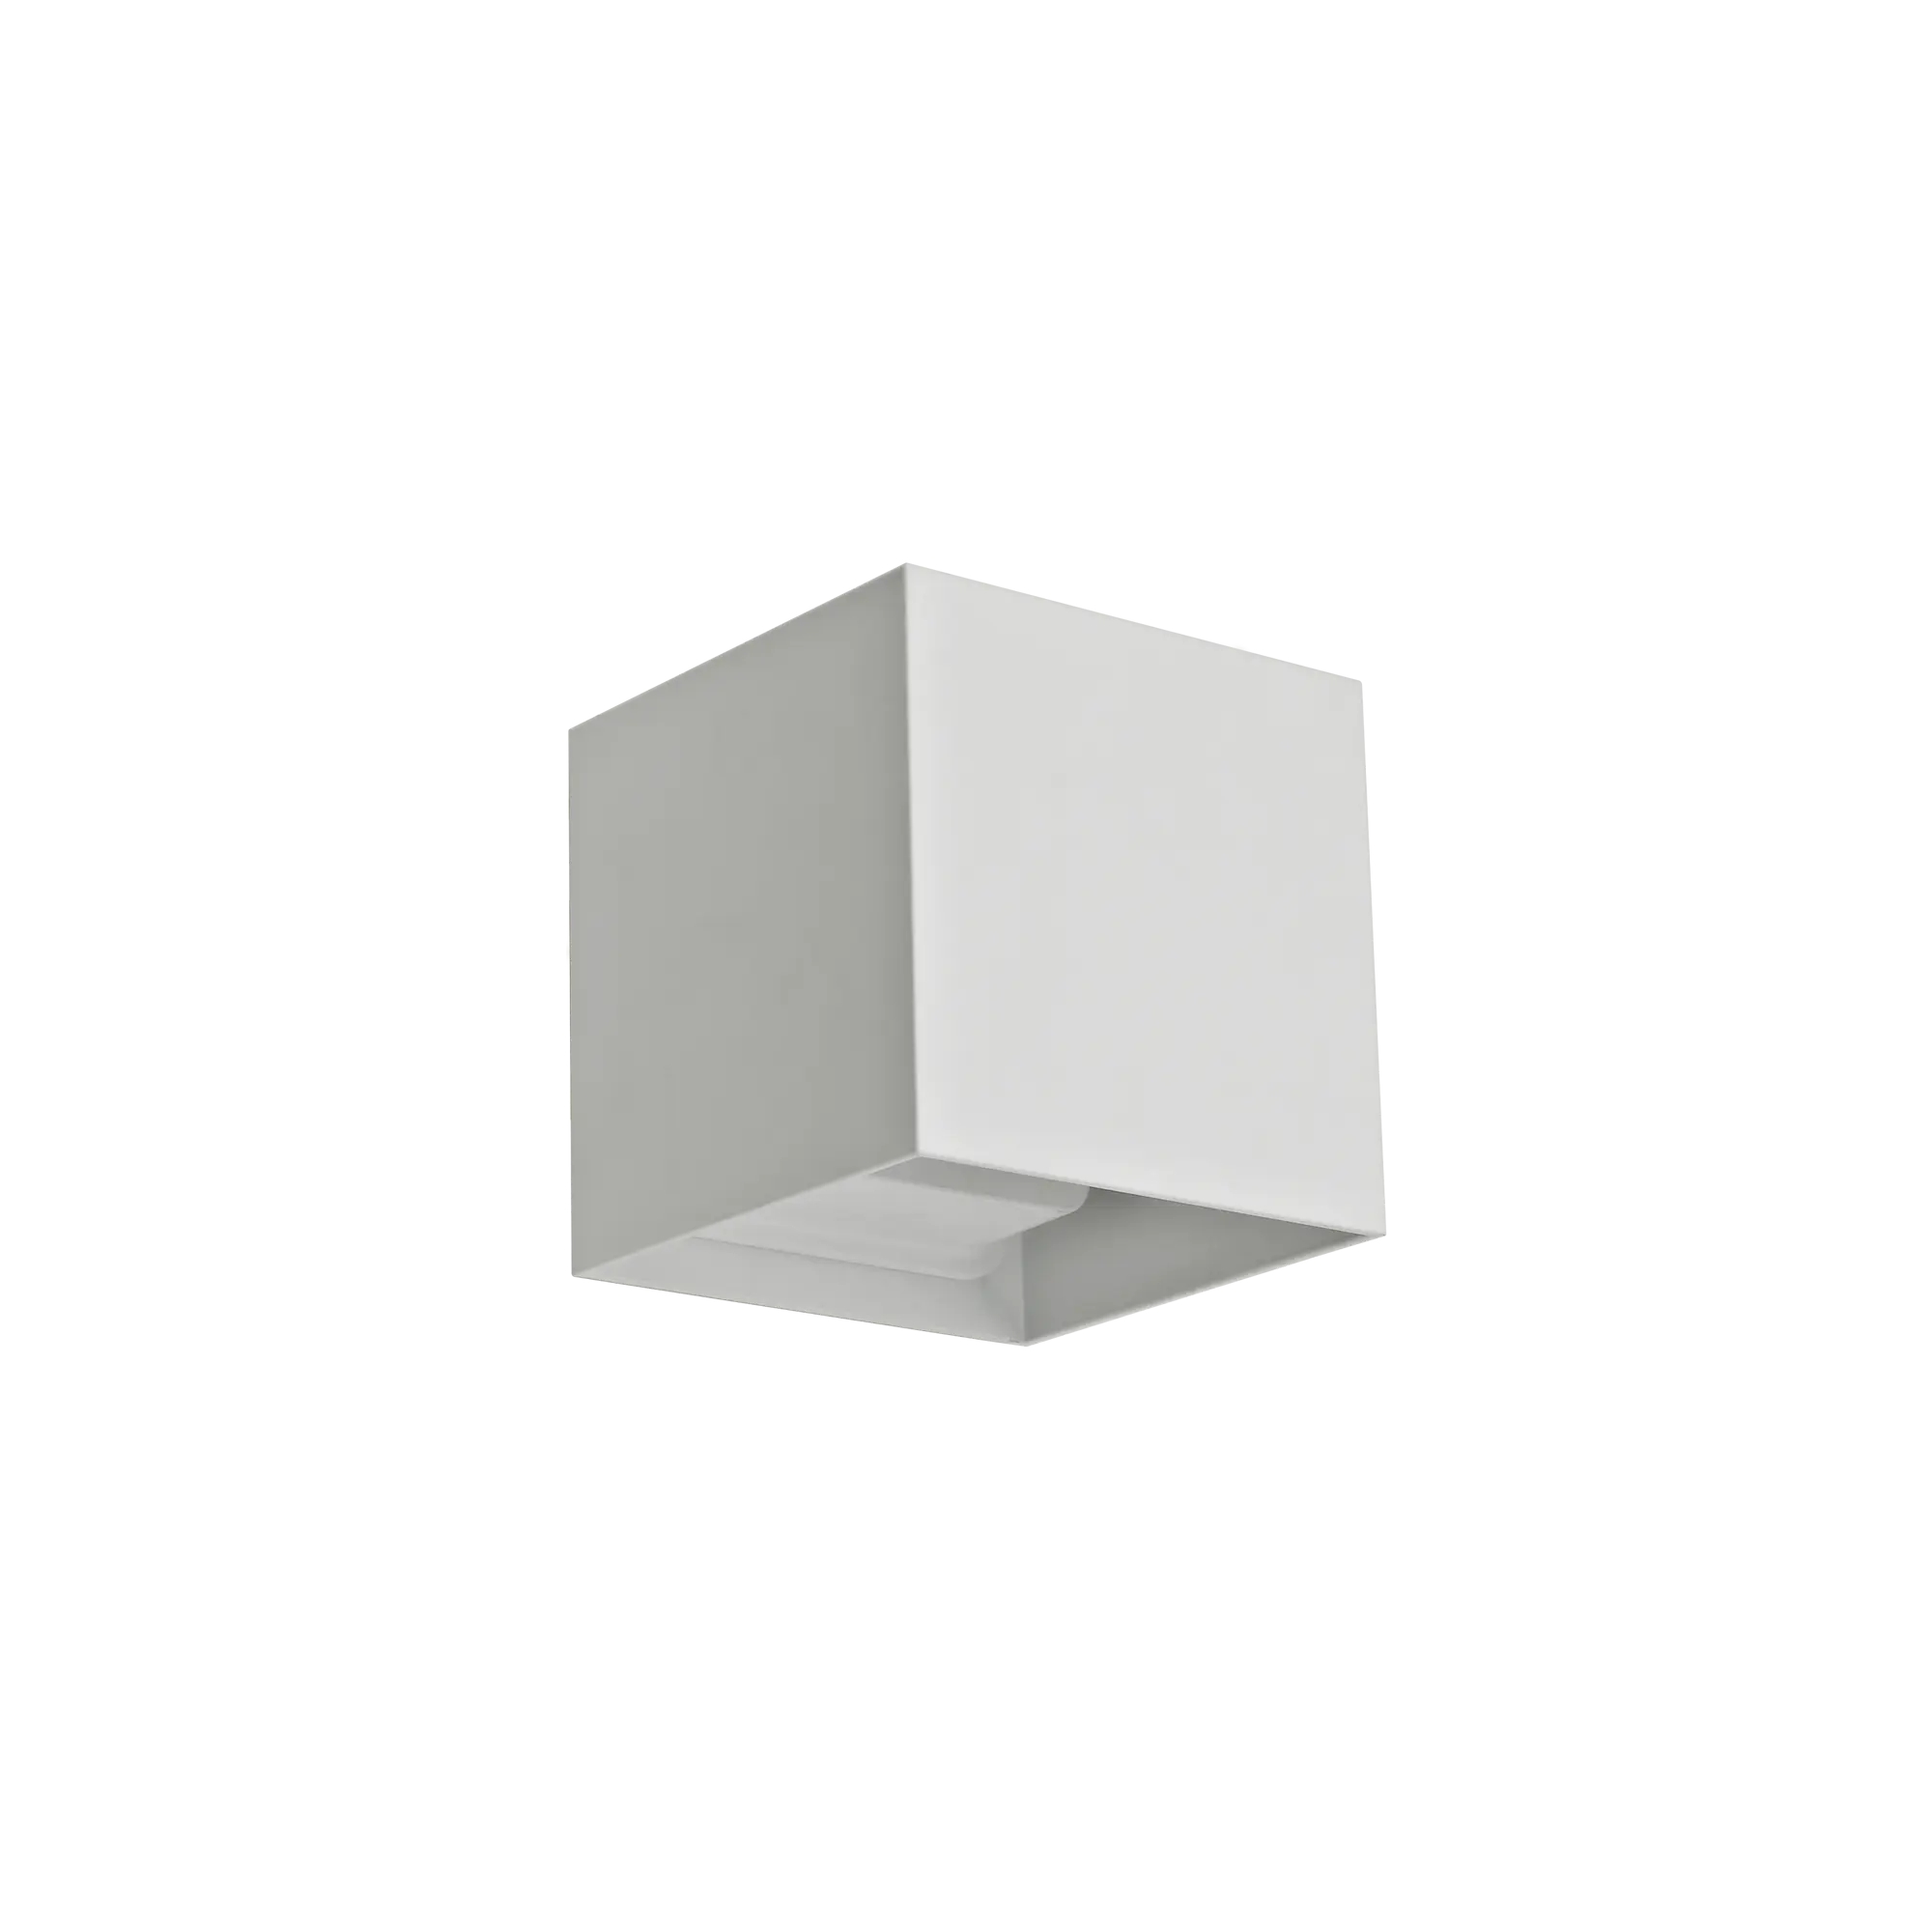 Applique design Kubbo bianco, in metallo, D. 10 cm 10x10 cm, 2 luci INSPIRE - 6